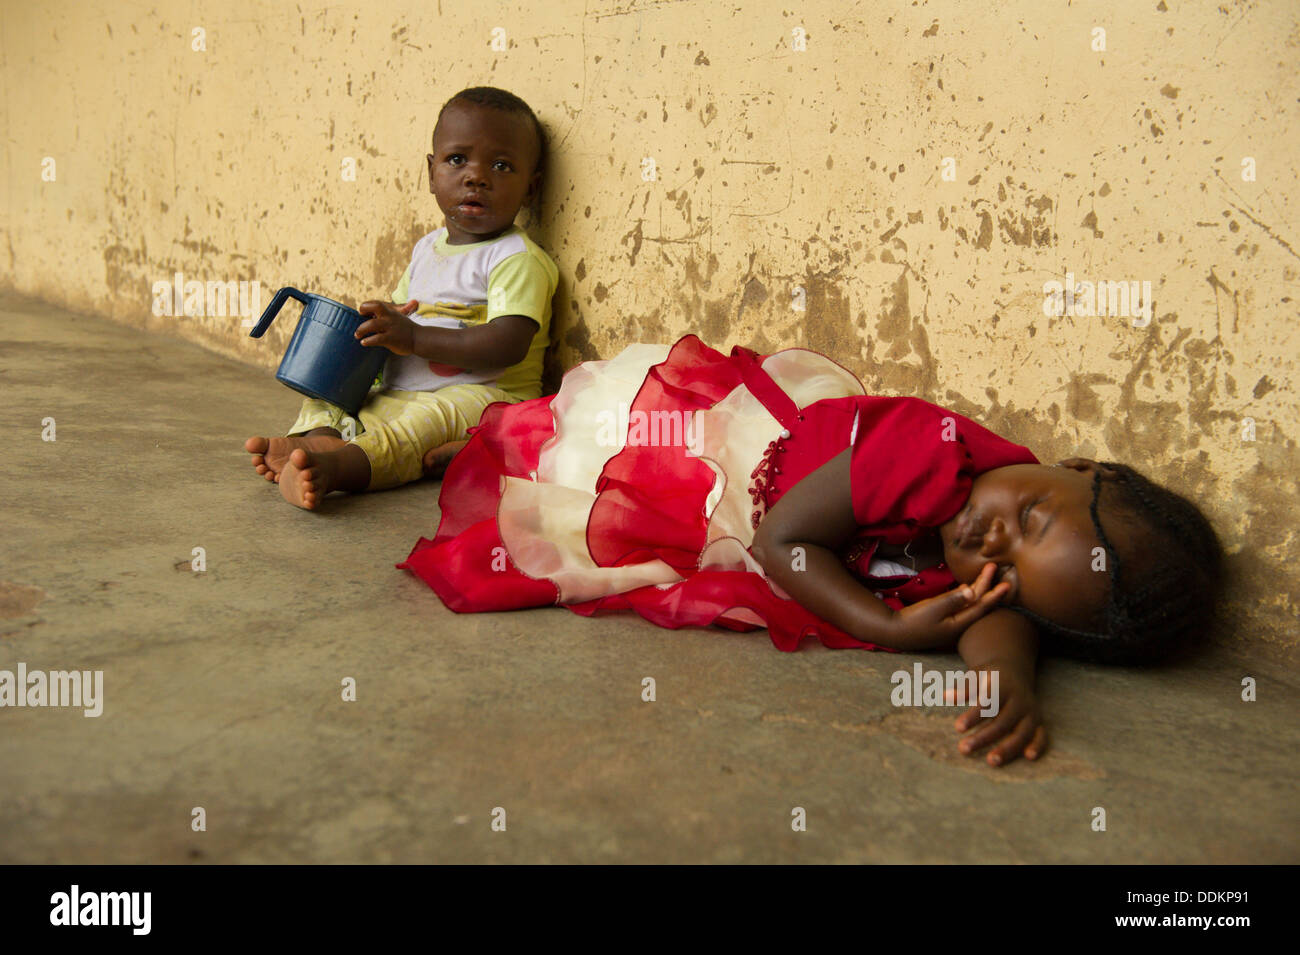 Les enfants d'Afrique noire sur le plancher au Nigeria Banque D'Images